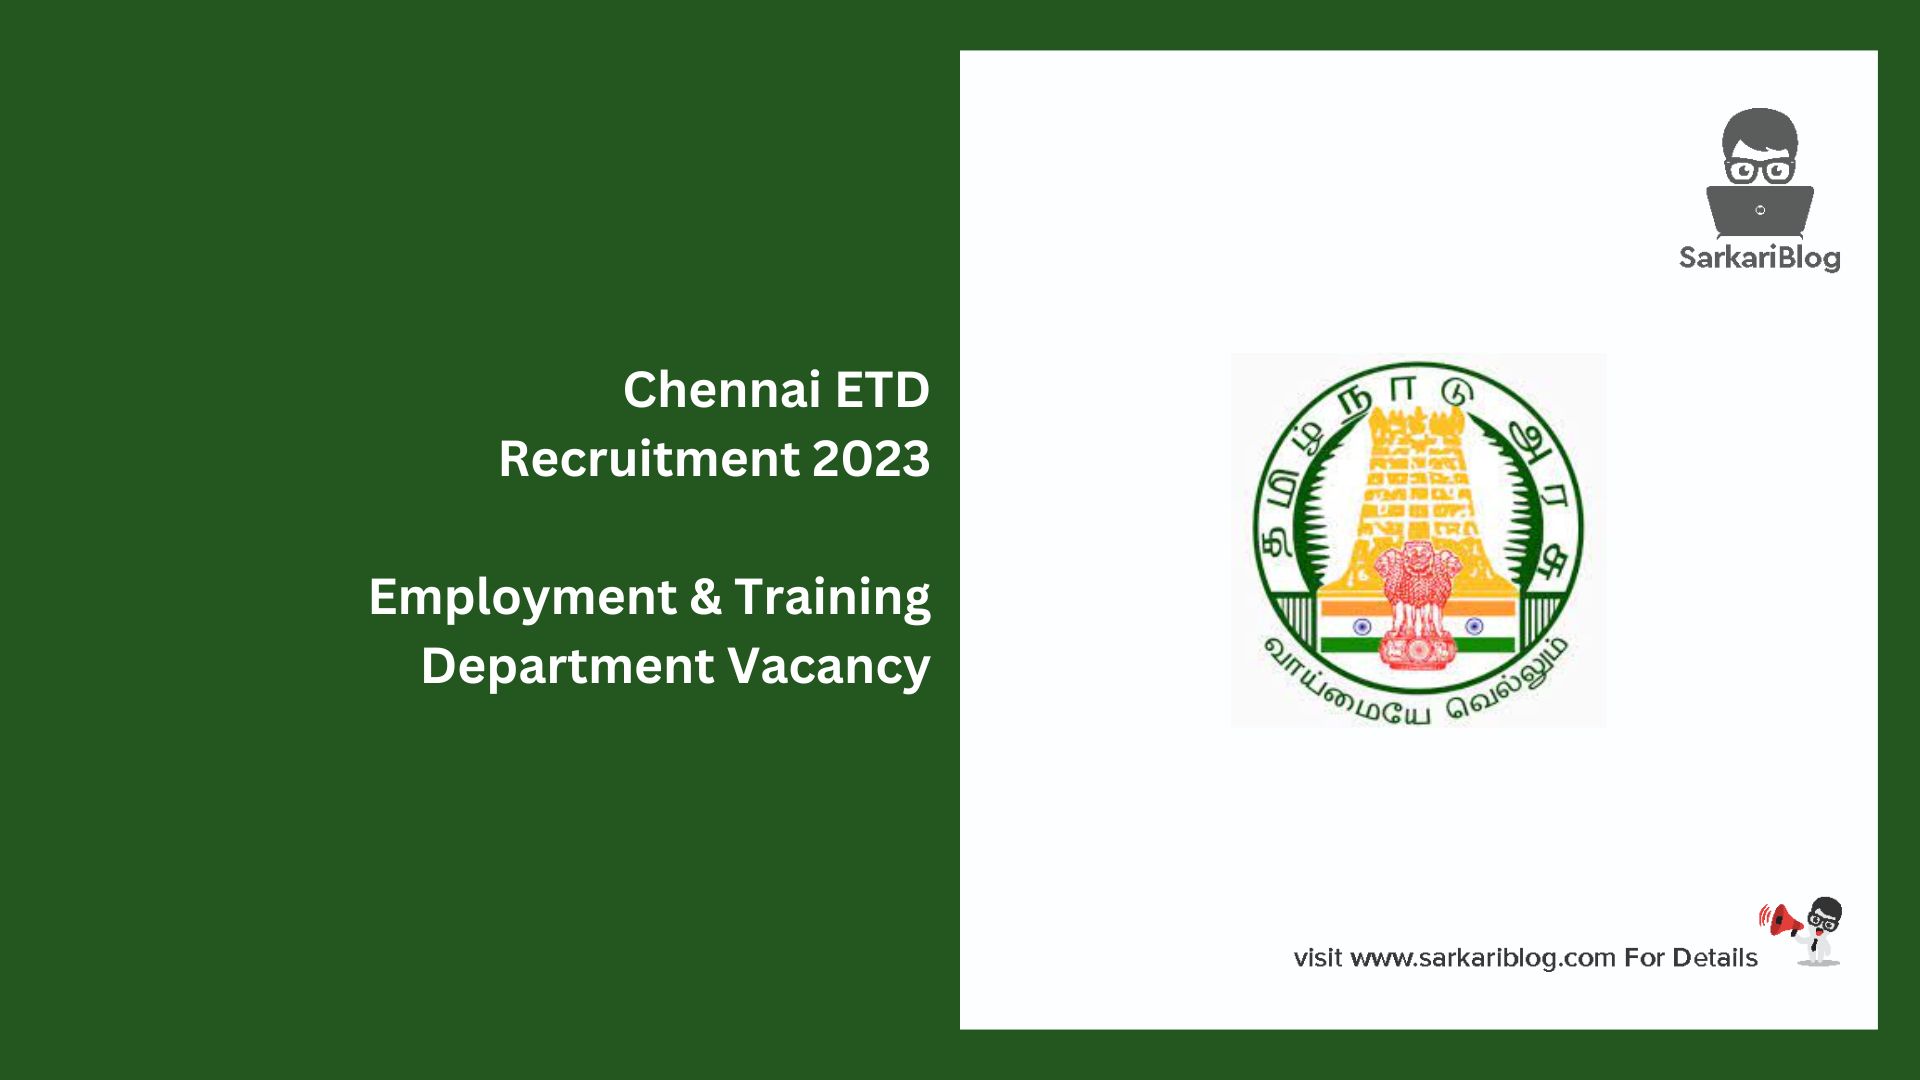 Chennai ETD Recruitment 2023